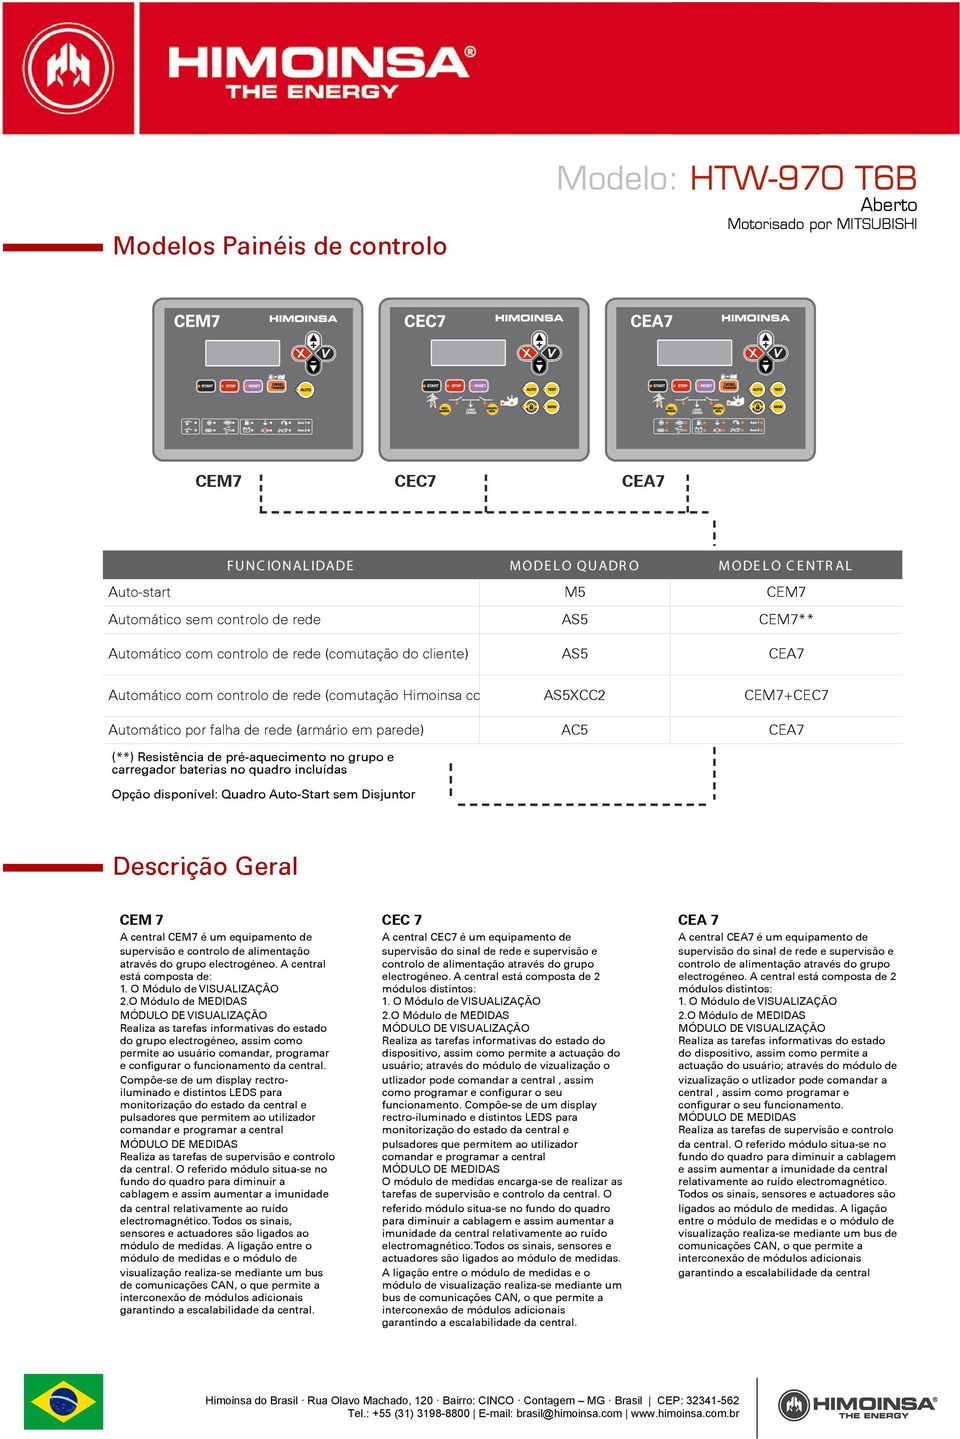 no grupo e carregador baterias no quadro incluídas Opção disponível: Quadro Auto-Start sem Disjuntor AC5 CEA7 Descrição Geral CEM 7 A central CEM7 é um equipamento de supervisão e controlo de